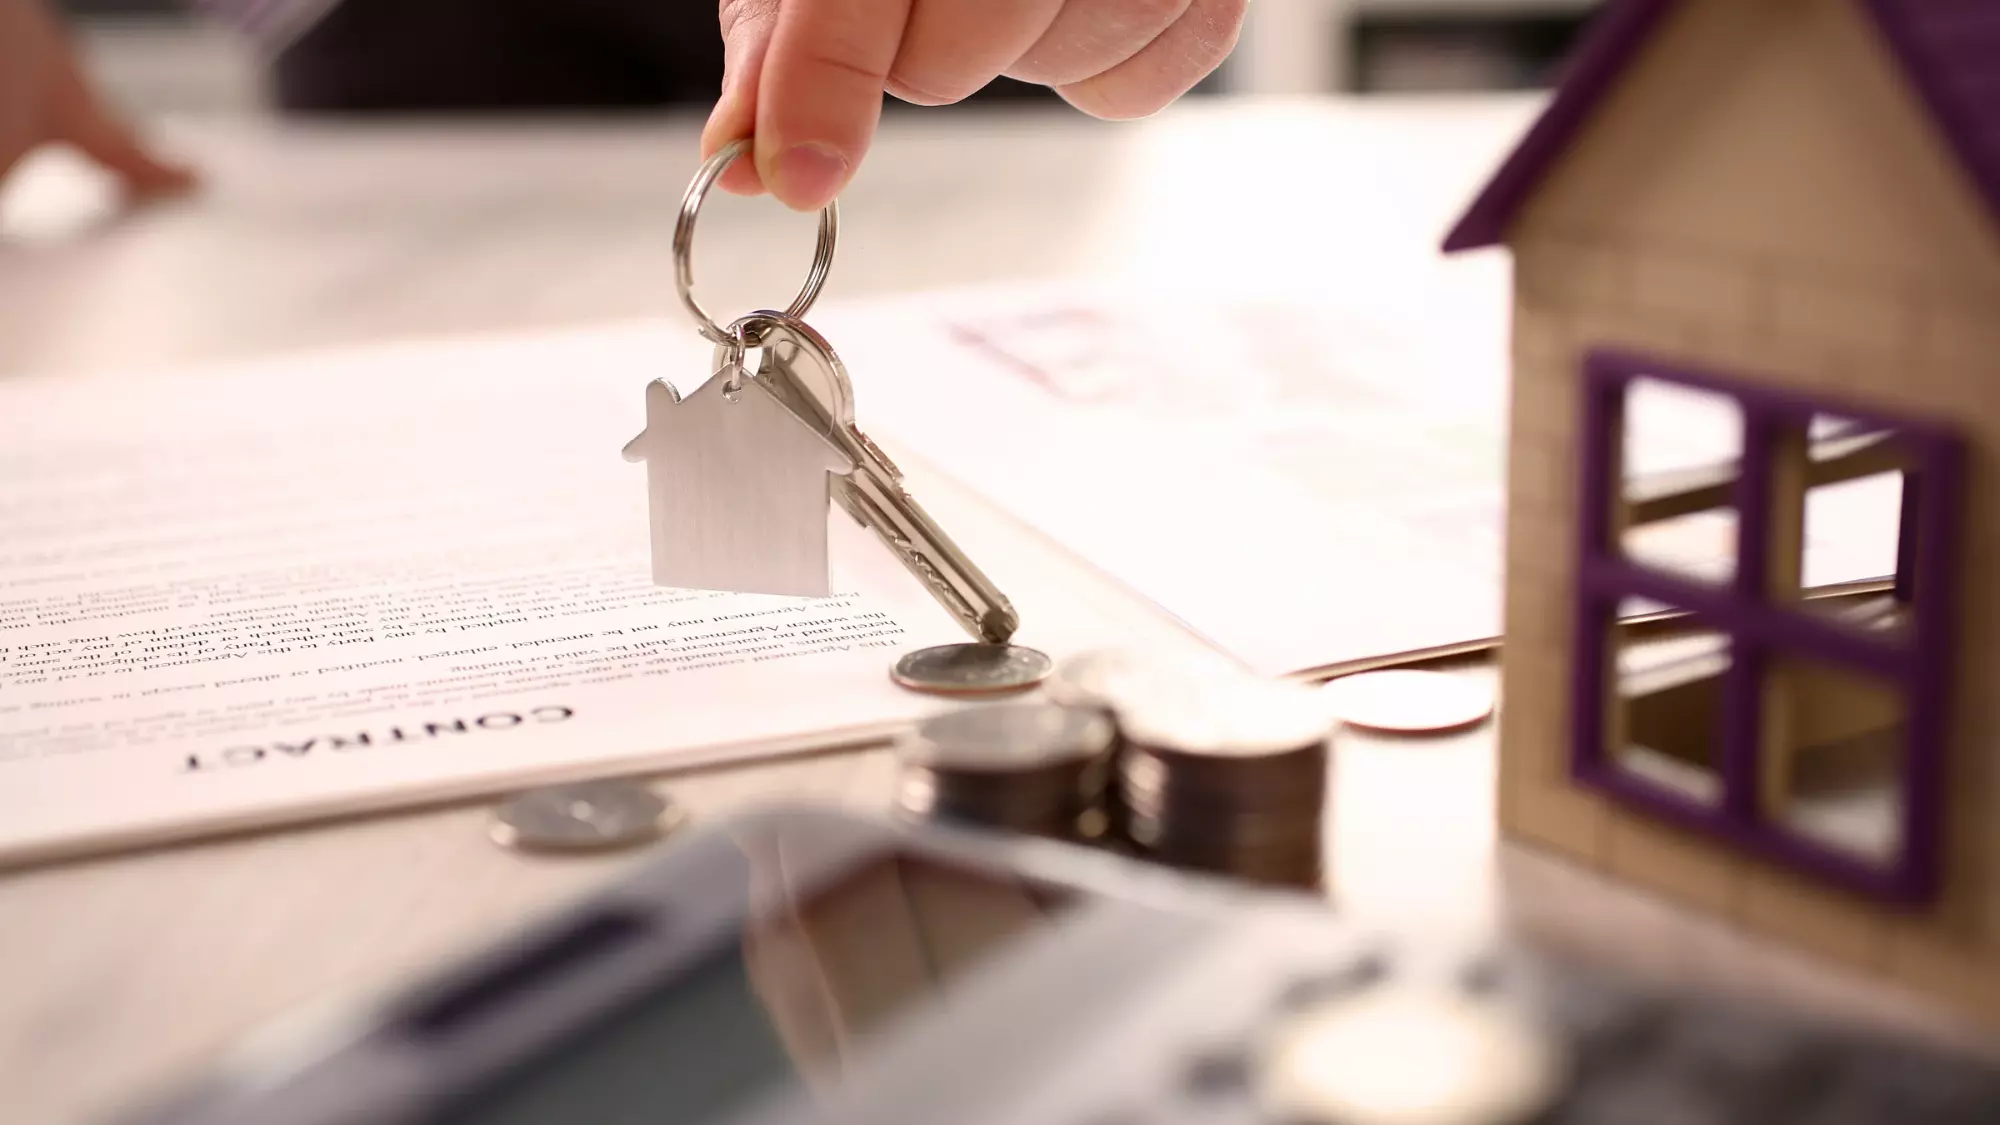 Une main qui donne les clés d'une maison, sur un bureau où sont des documents